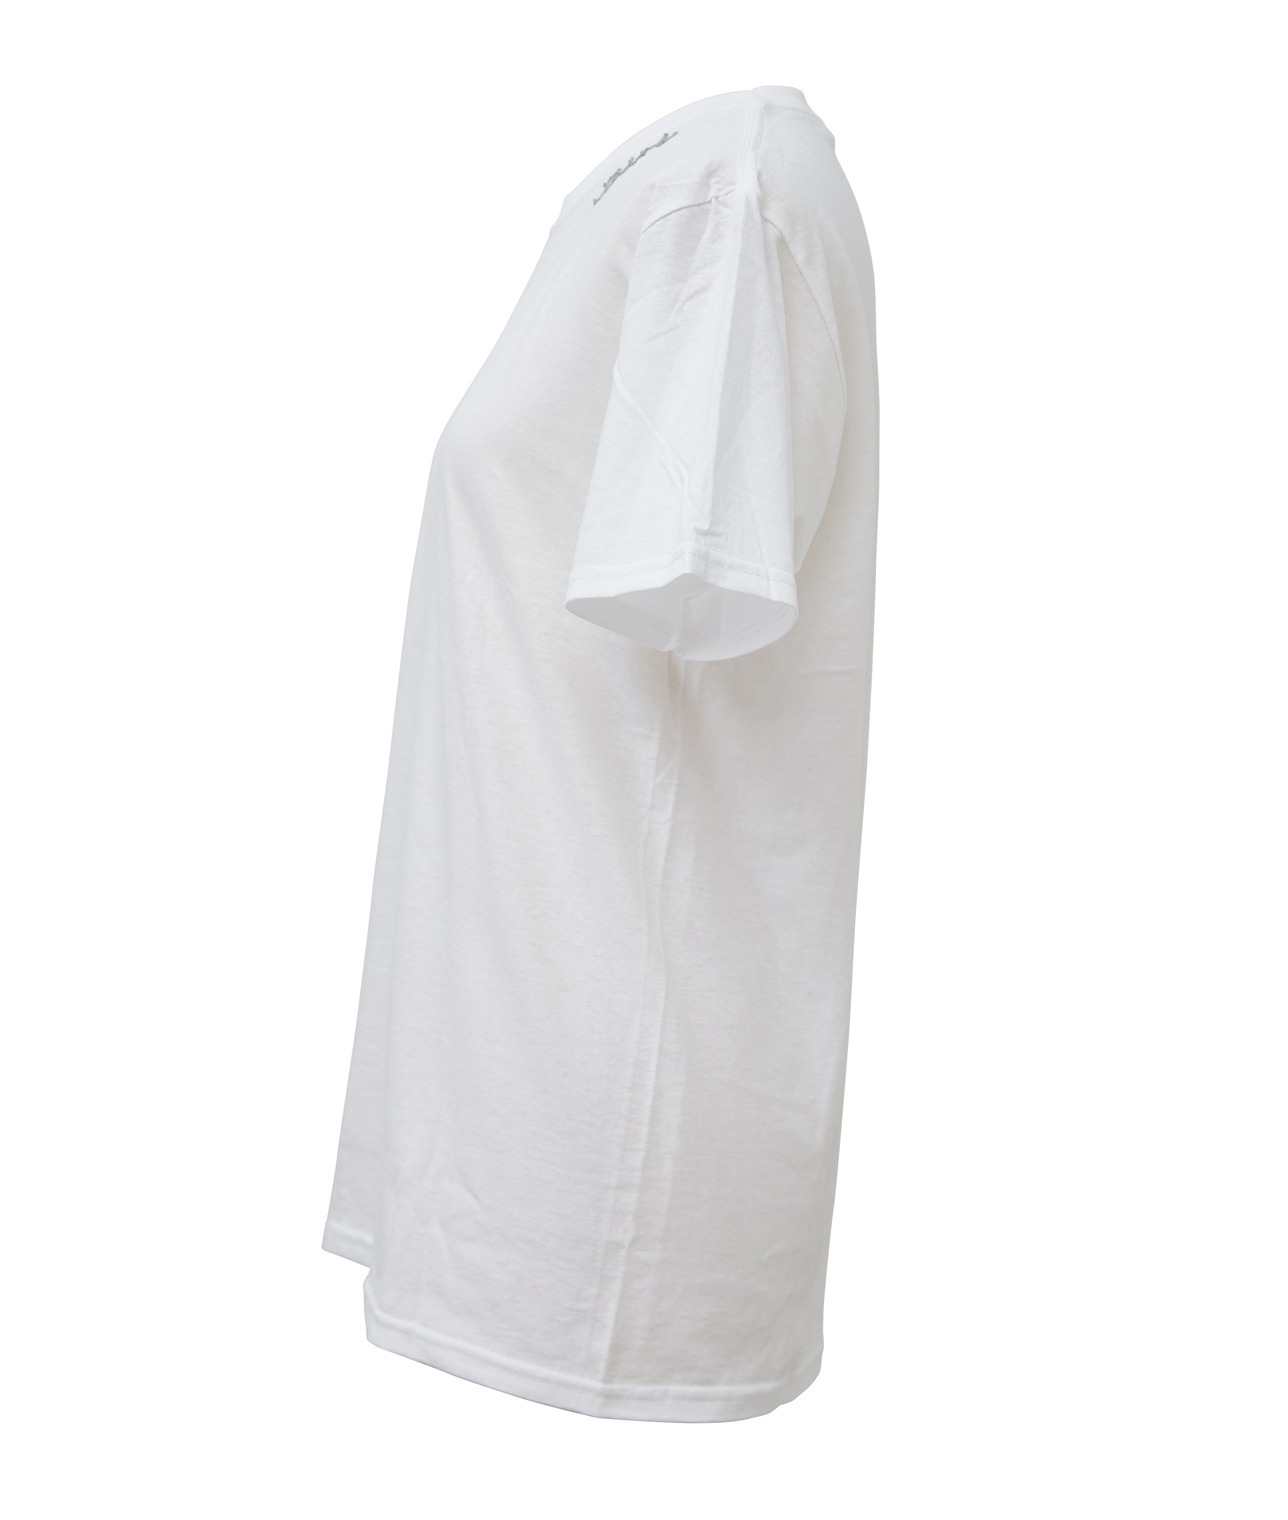 【別注】FRUIT OF THE LOOM/刺繍パックTシャツ 詳細画像 ホワイト/グレー 3